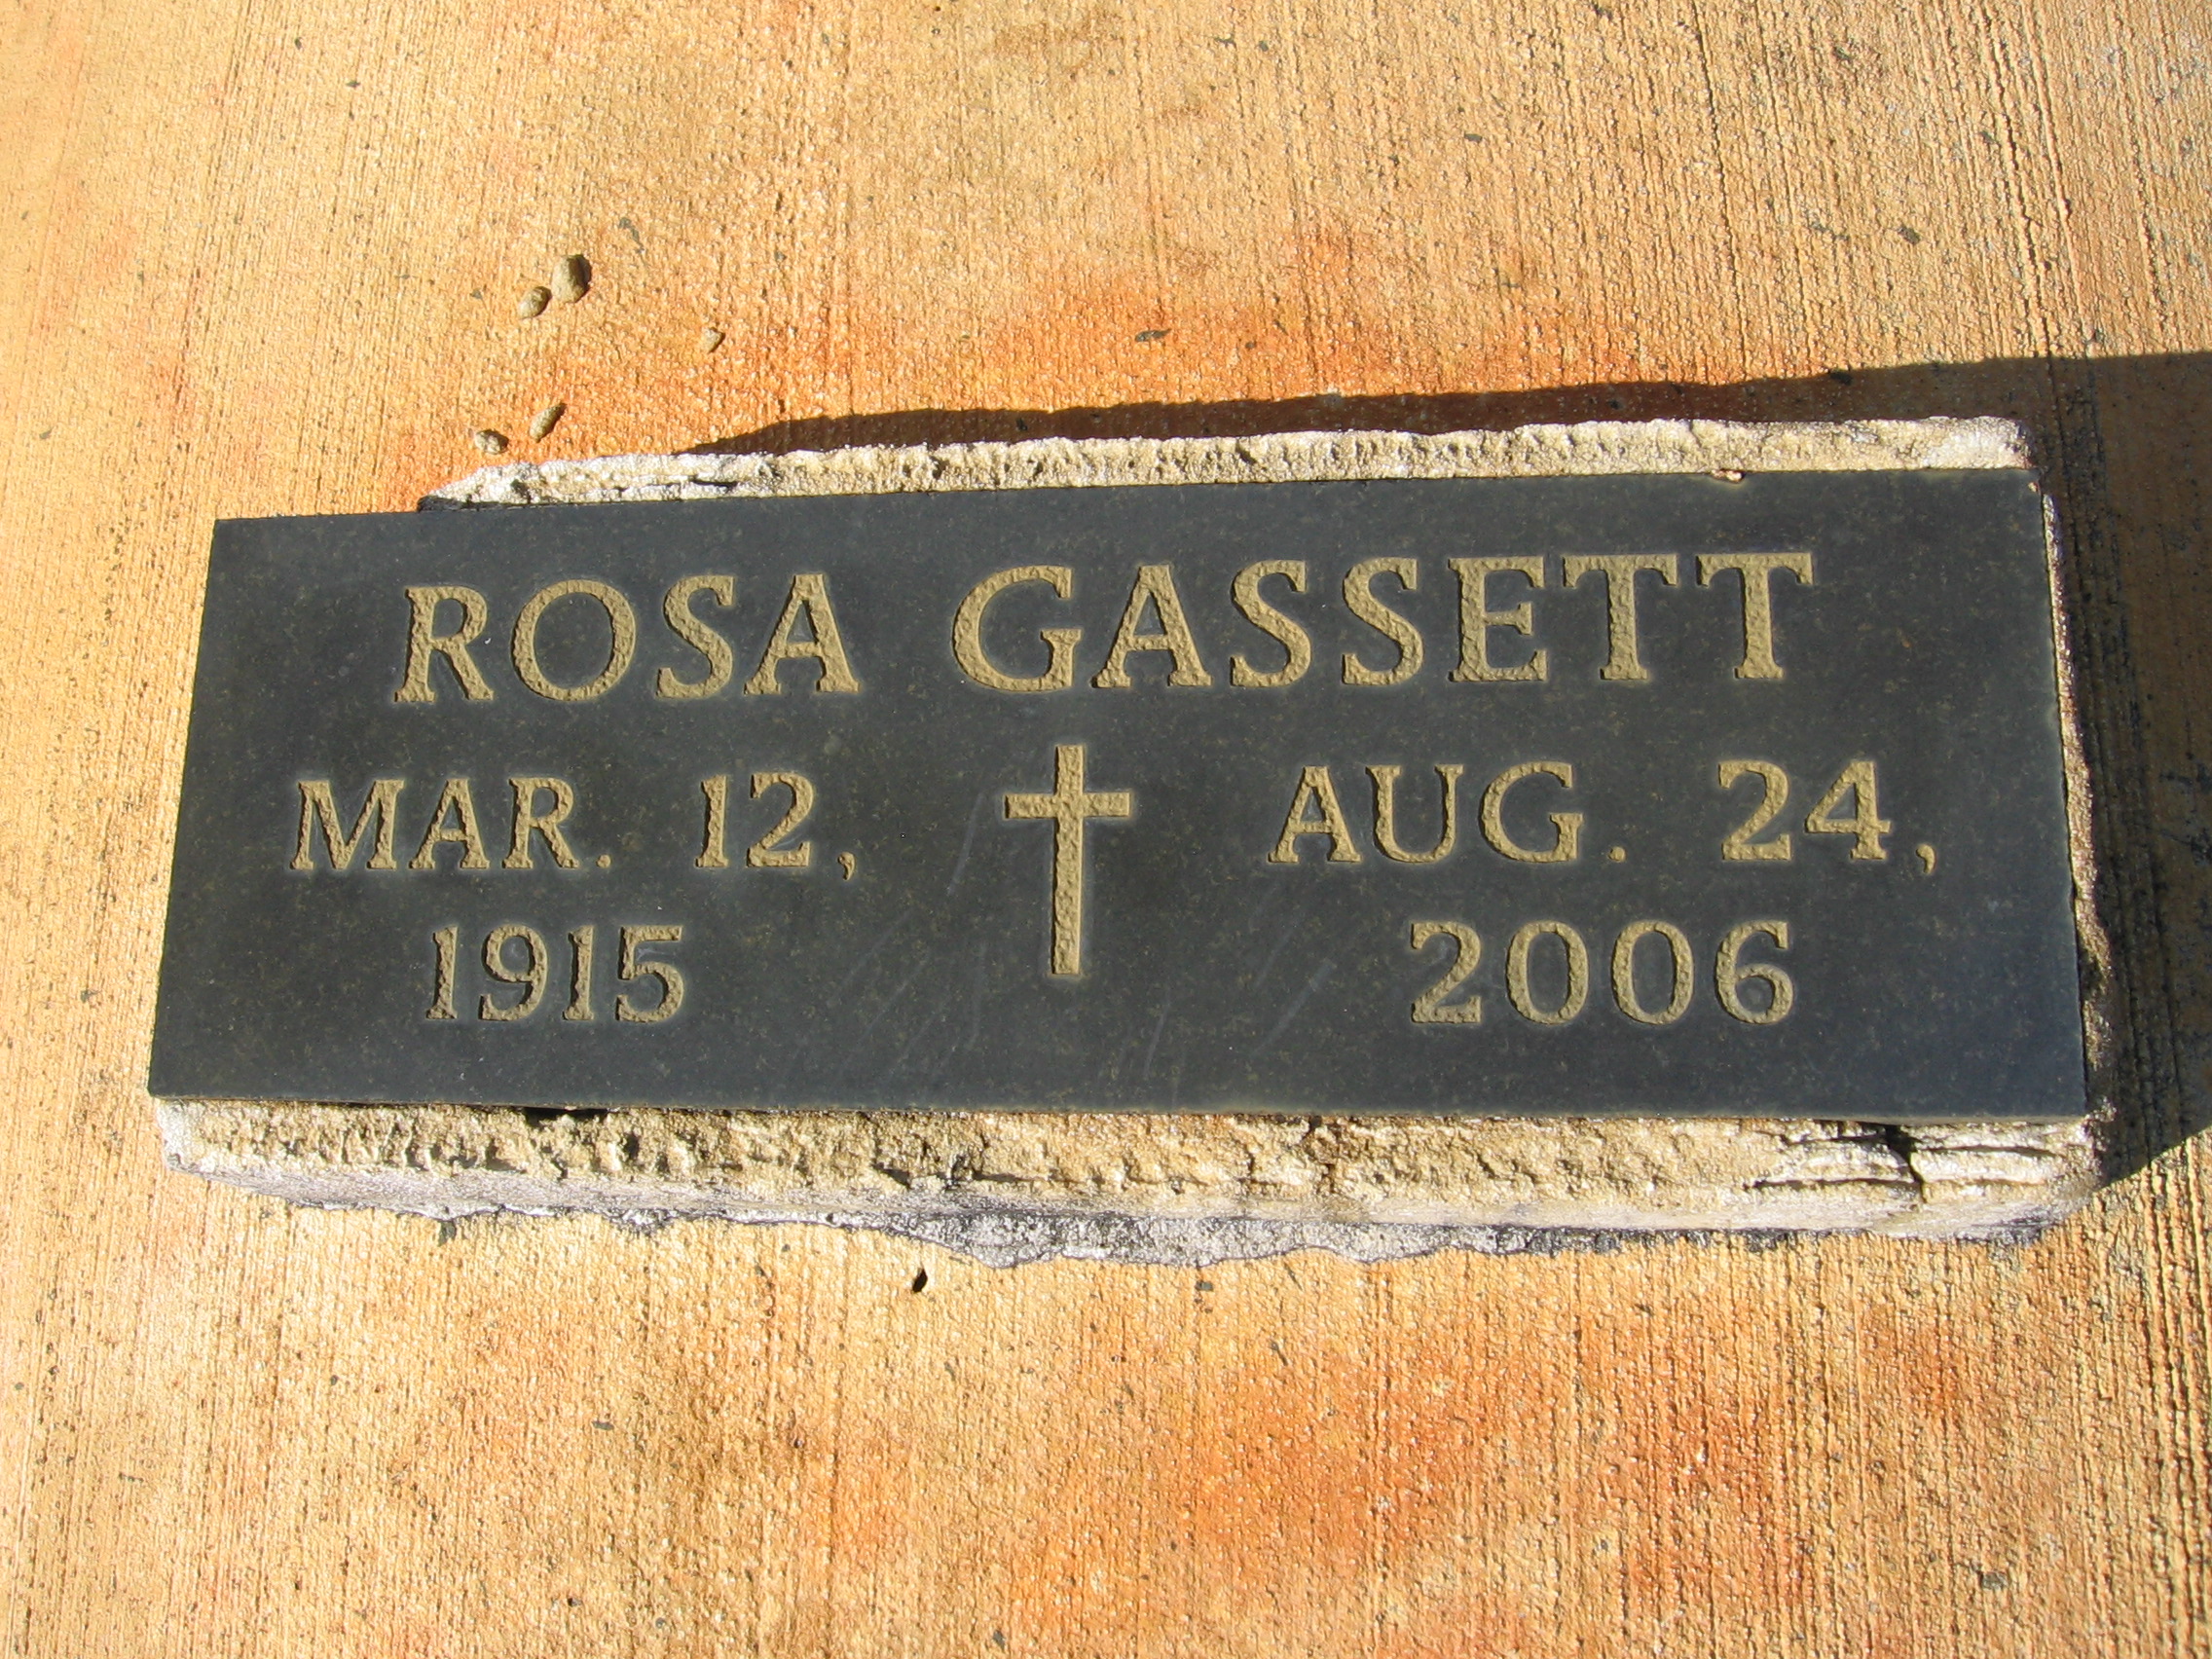 Rosa Gassett